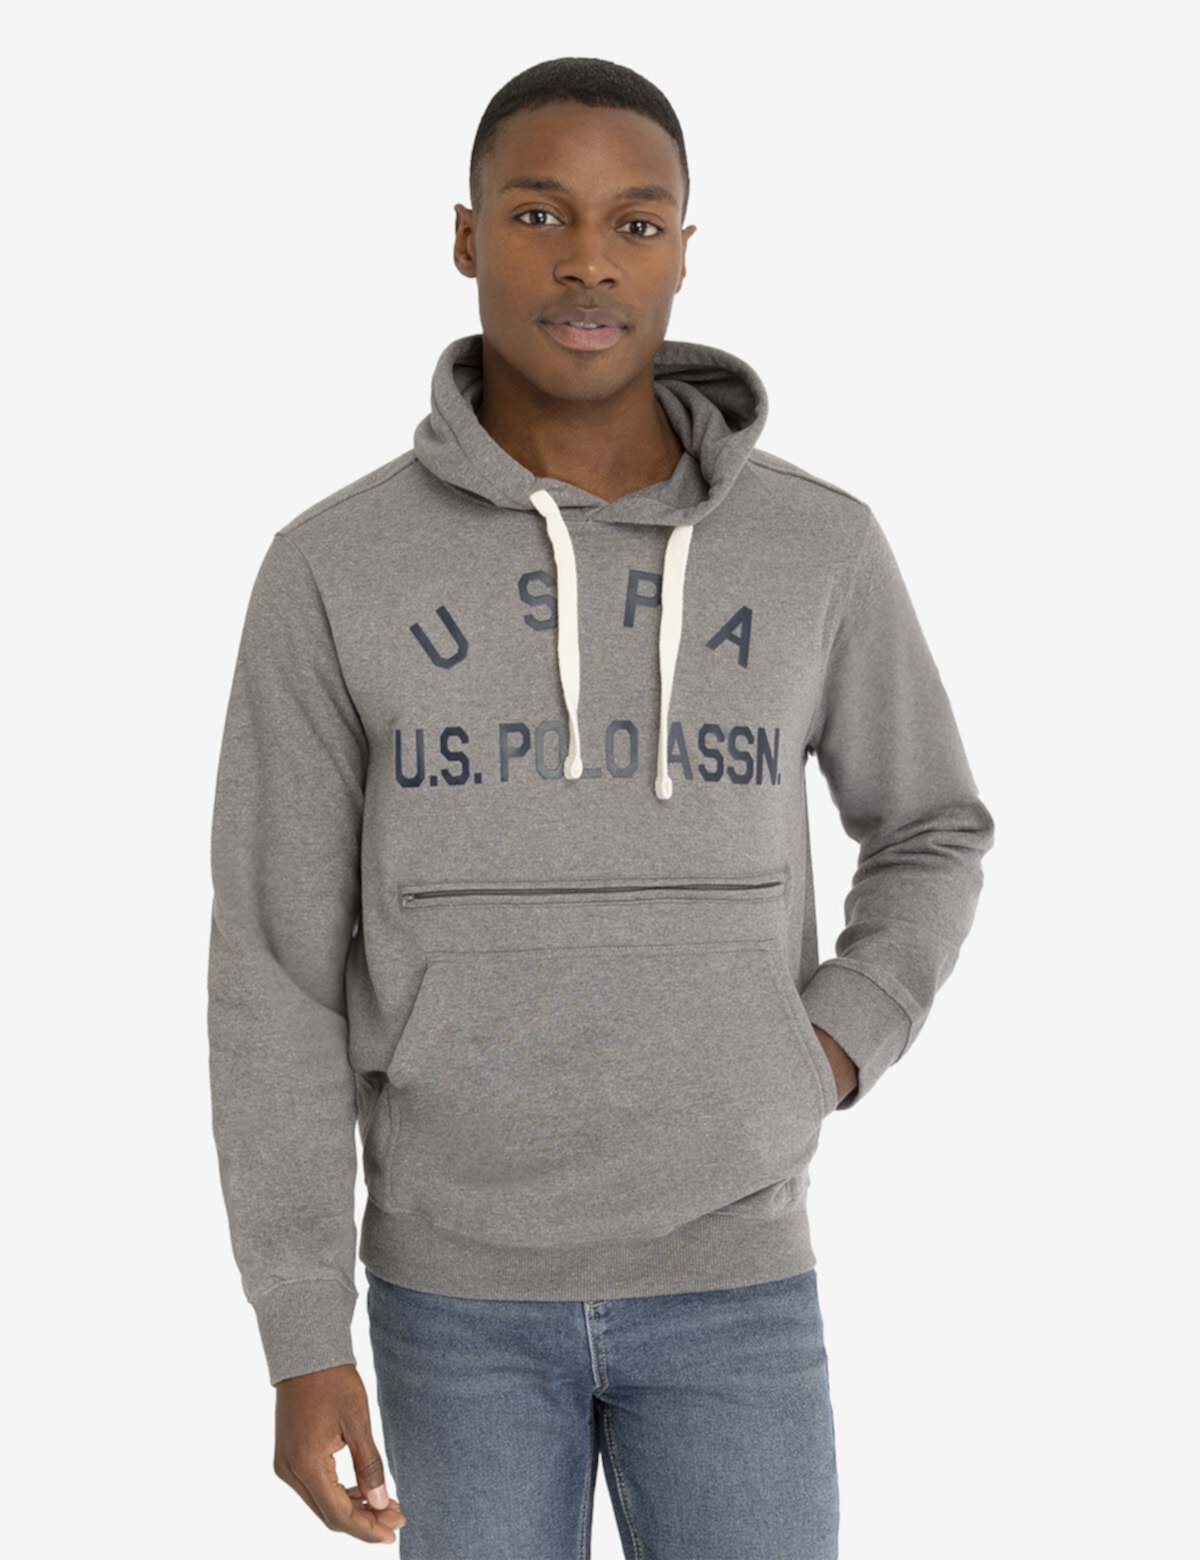 Флисовый пуловер с капюшоном USPA U.S. POLO ASSN.